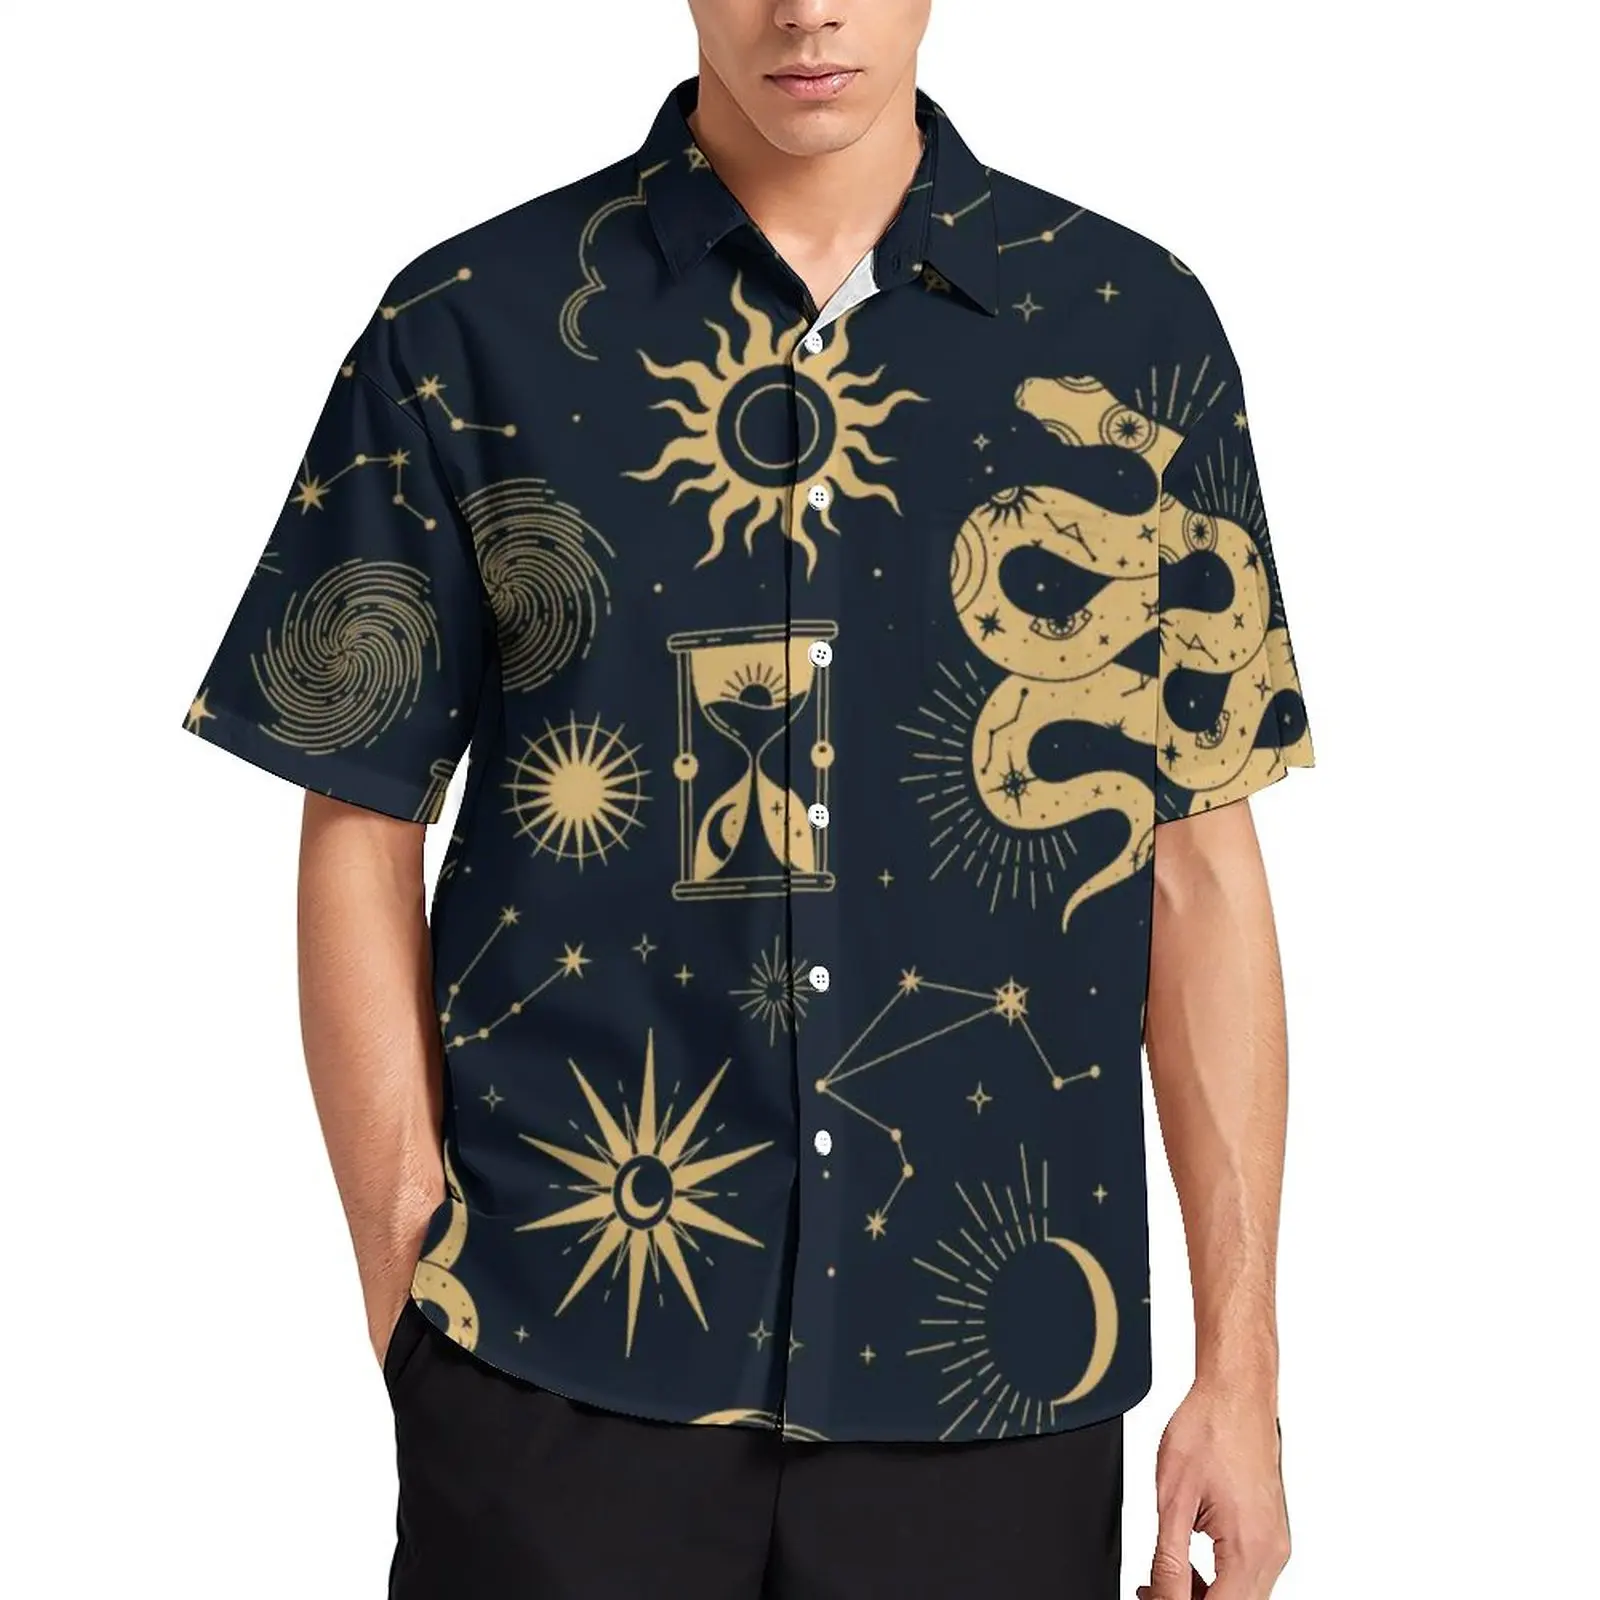 

Рубашка мужская с принтом Солнца и Луны, повседневная астрономическая пляжная блузка с ведьмой, гавайская уличная одежда, графическая одеж...